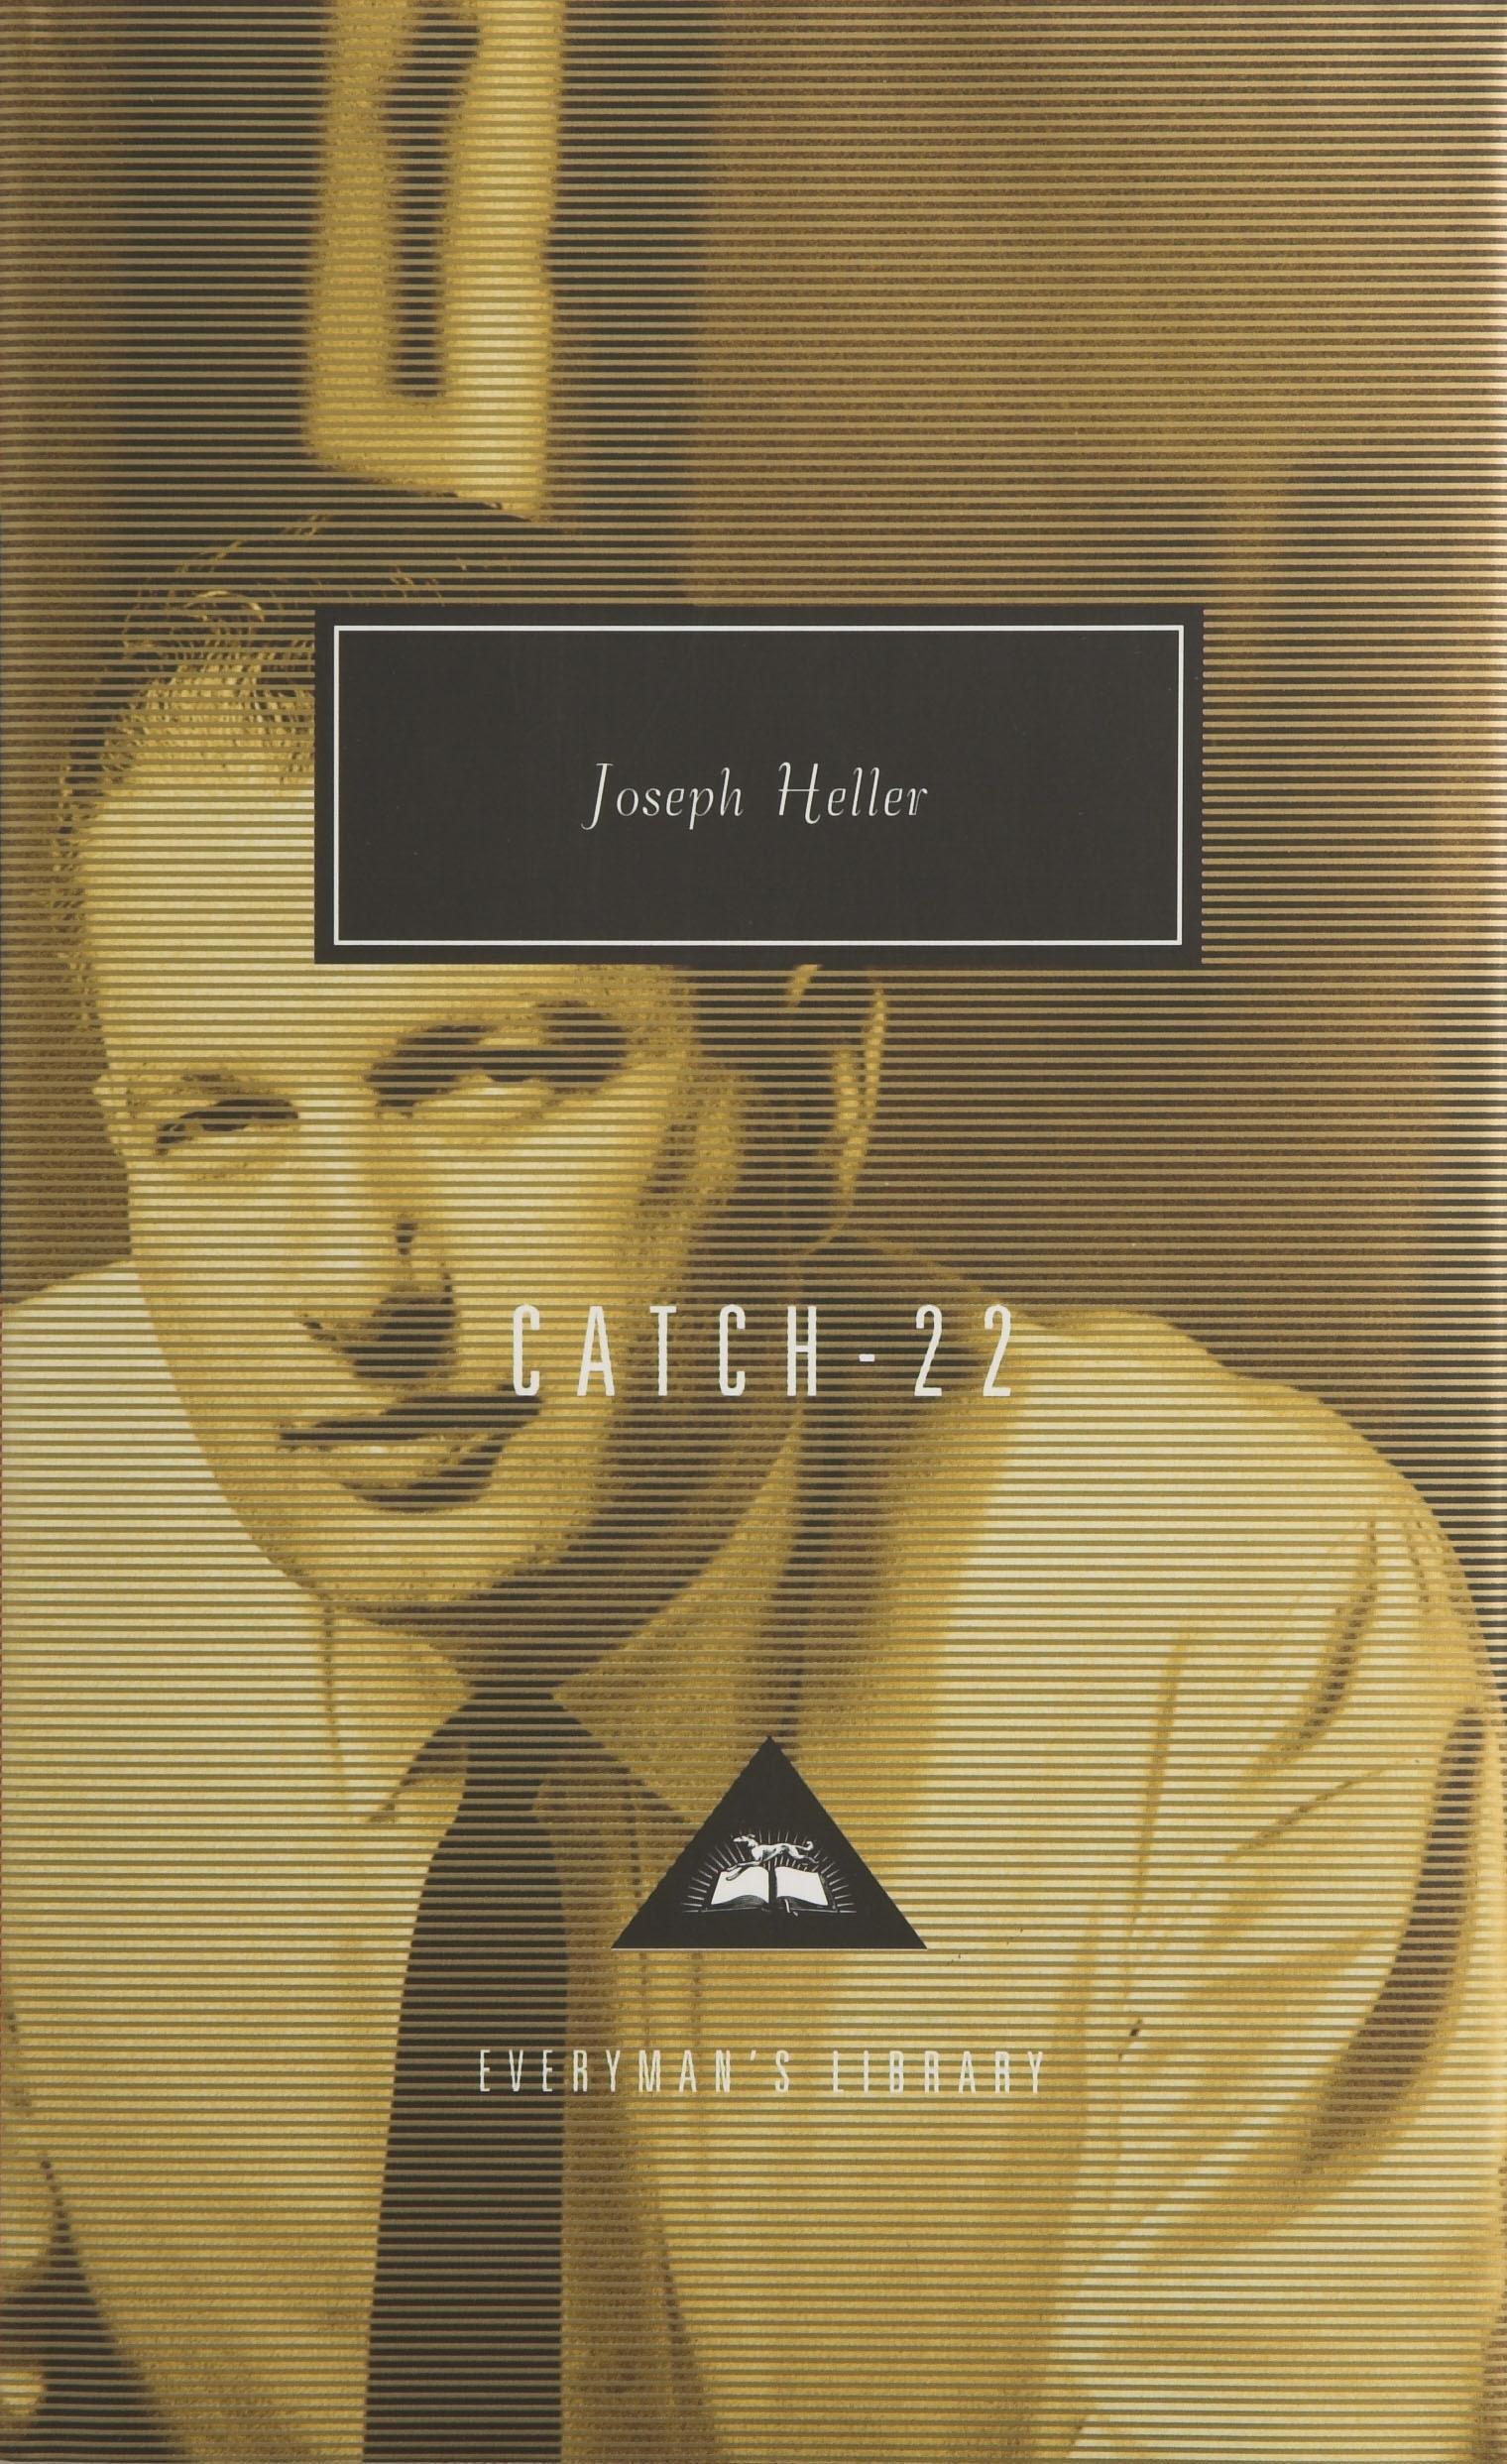 Catch 22 - Joseph Heller